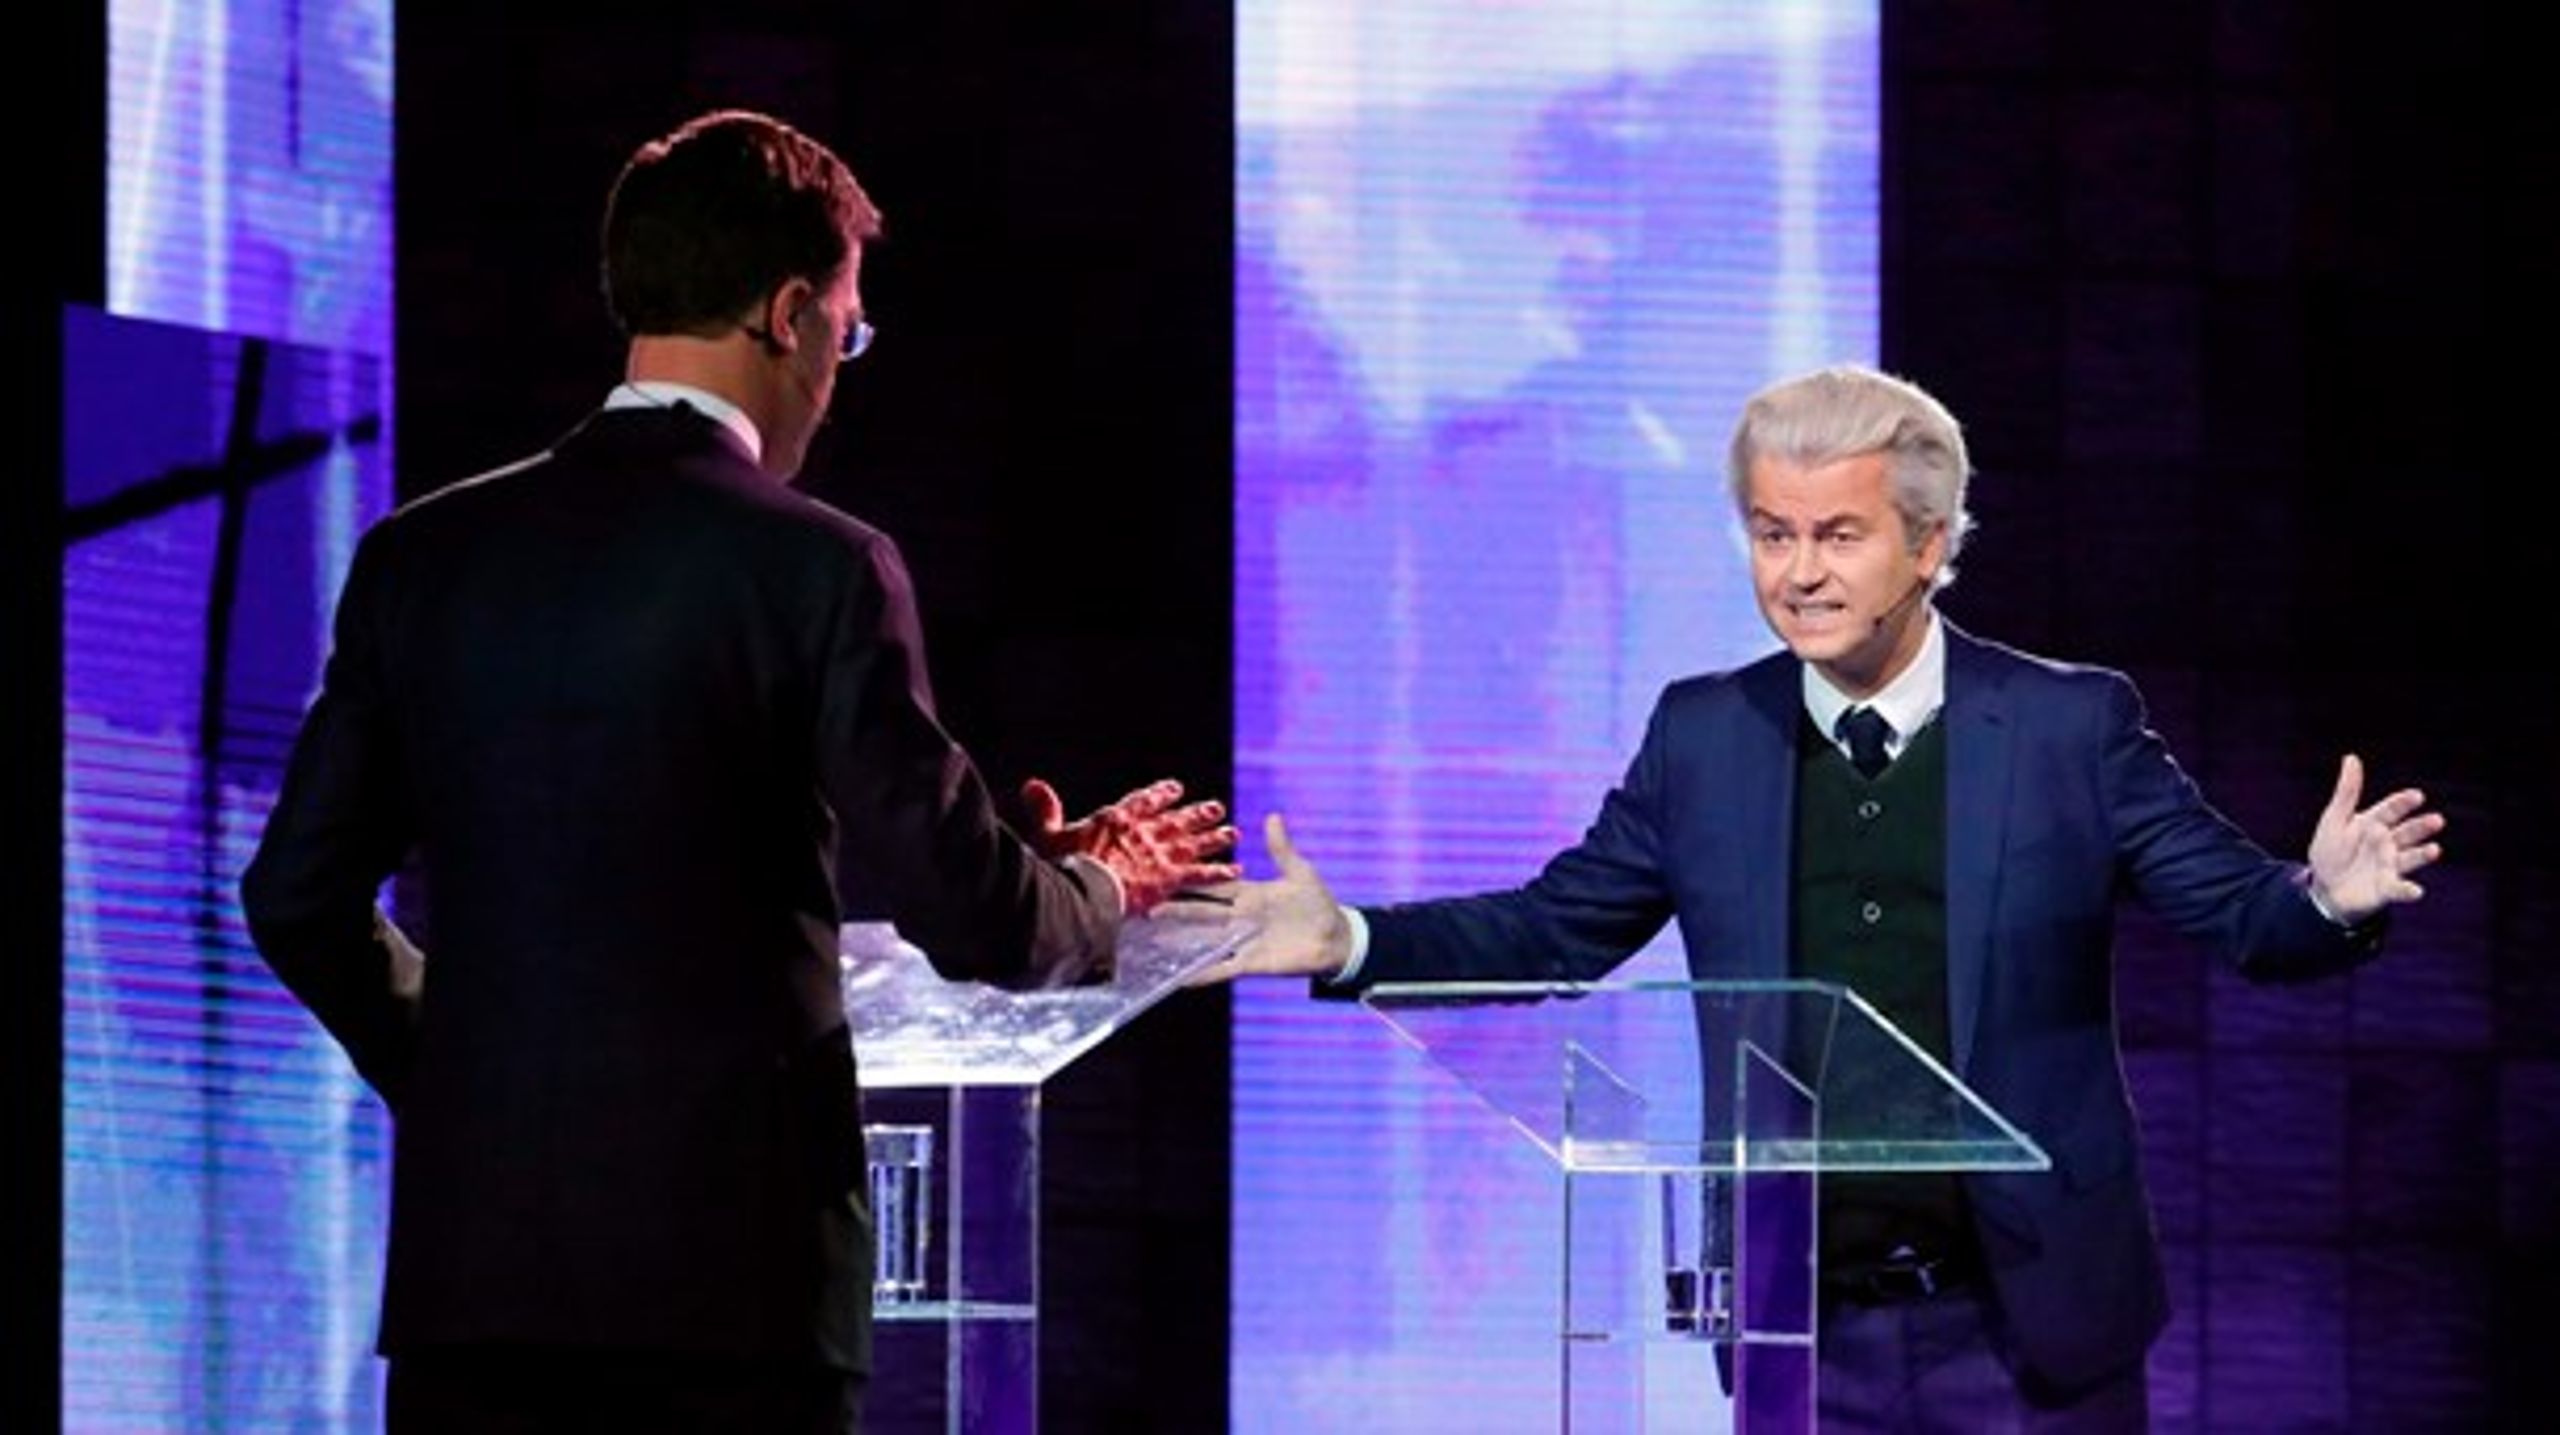 Trods store armbevægelser var der kun beskeden fremgang til Geert Wilders' Frihedspartiet. Det hollandske valg bød dog på andre markante vælgervandringer, men det forhindrede ikke&nbsp;meningsmålingerne i at klare sig godt, skriver Kenneth Thue oven på sidste uges valg i Holland.